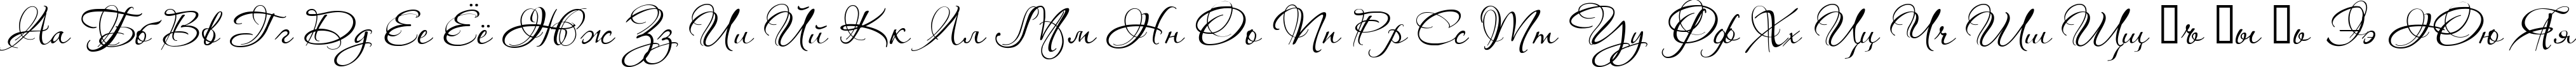 Пример написания русского алфавита шрифтом Aquarelle